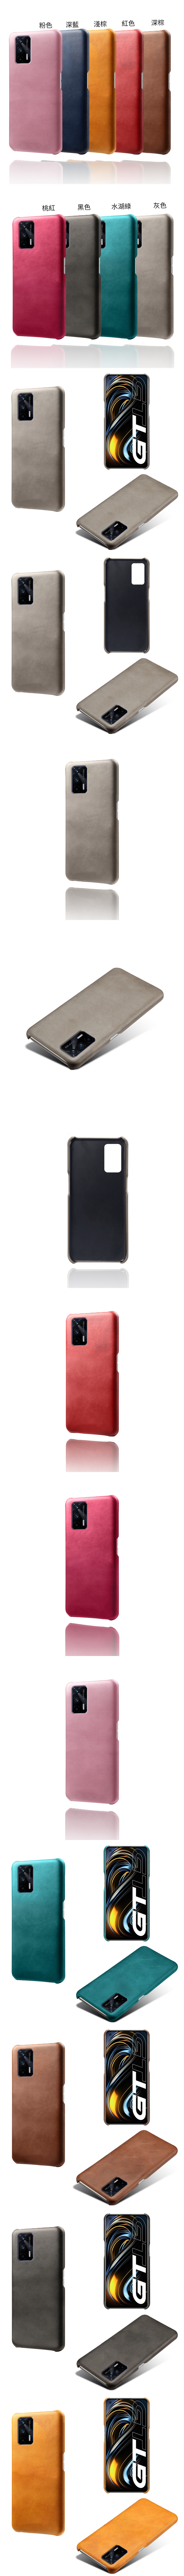 Realme GT 皮革保護殼(PLAIN) - 牛皮仿真皮紋單色背蓋素色多色手機殼保護套手機套